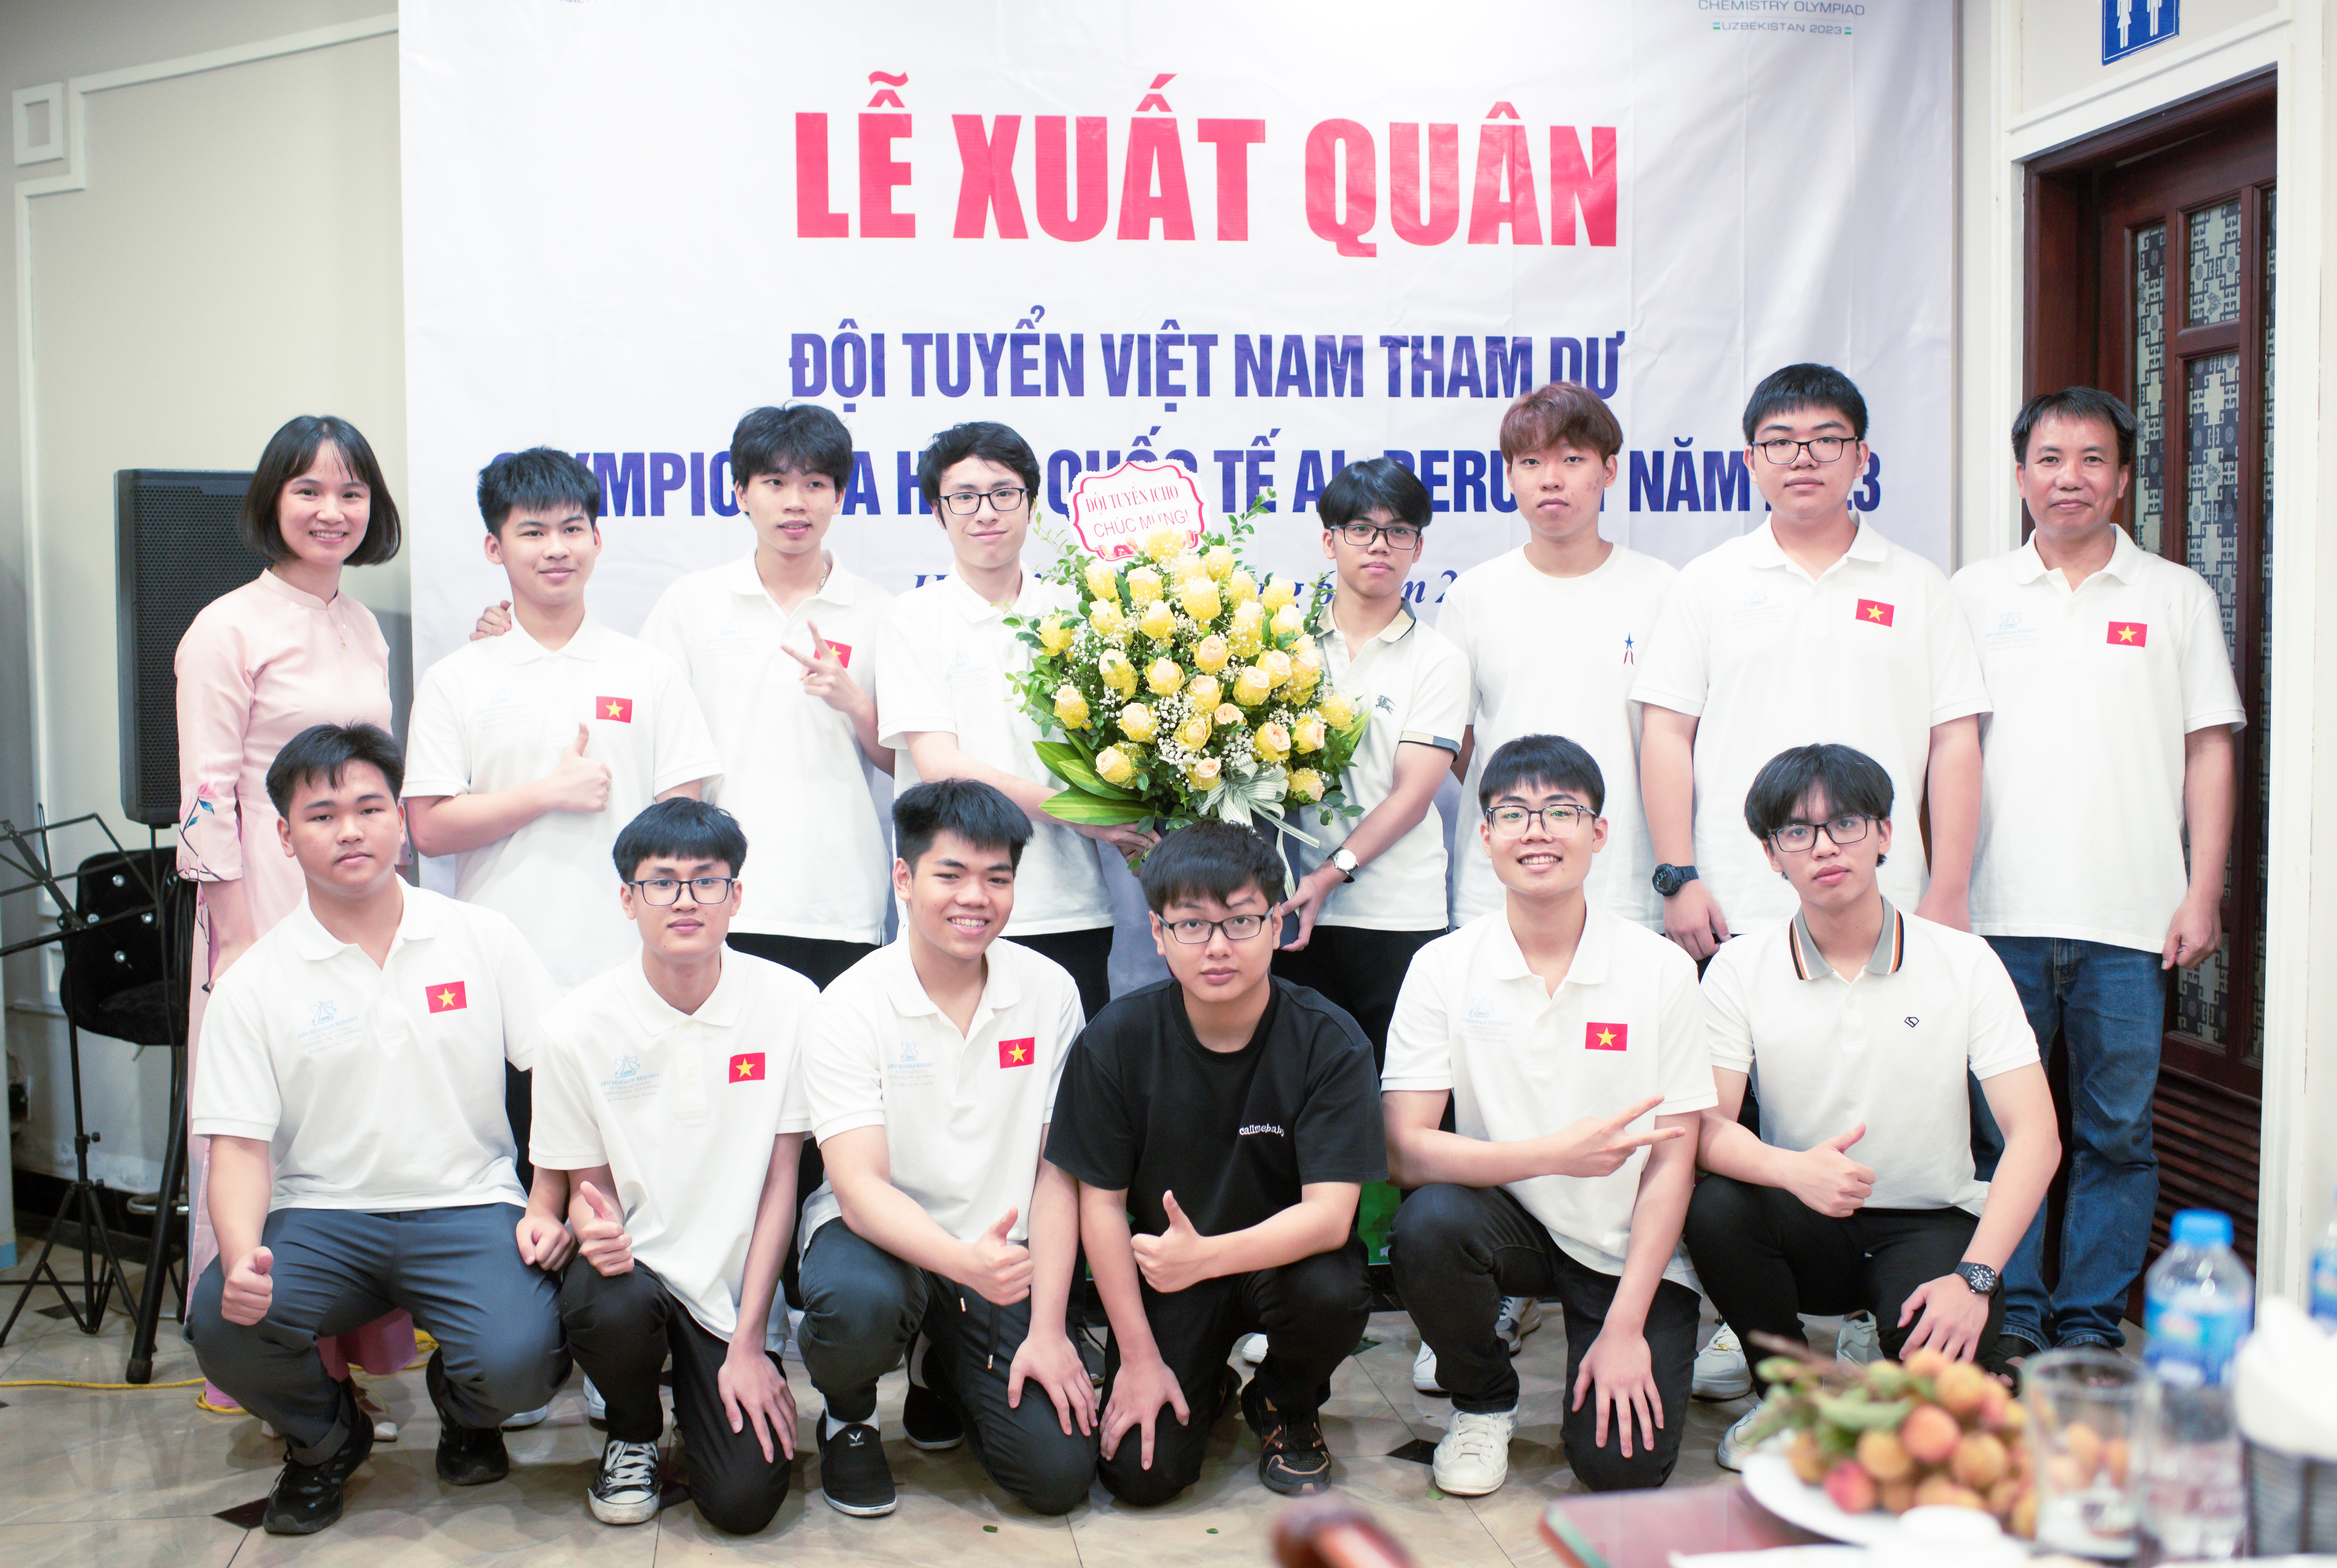 Lễ xuất quân Đội tuyển Việt Nam tham dự kỳ thi Hóa học Quốc tế Al-Beruniy lần thứ nhất tổ chức tại thành phố Khiva – Uzebekistan